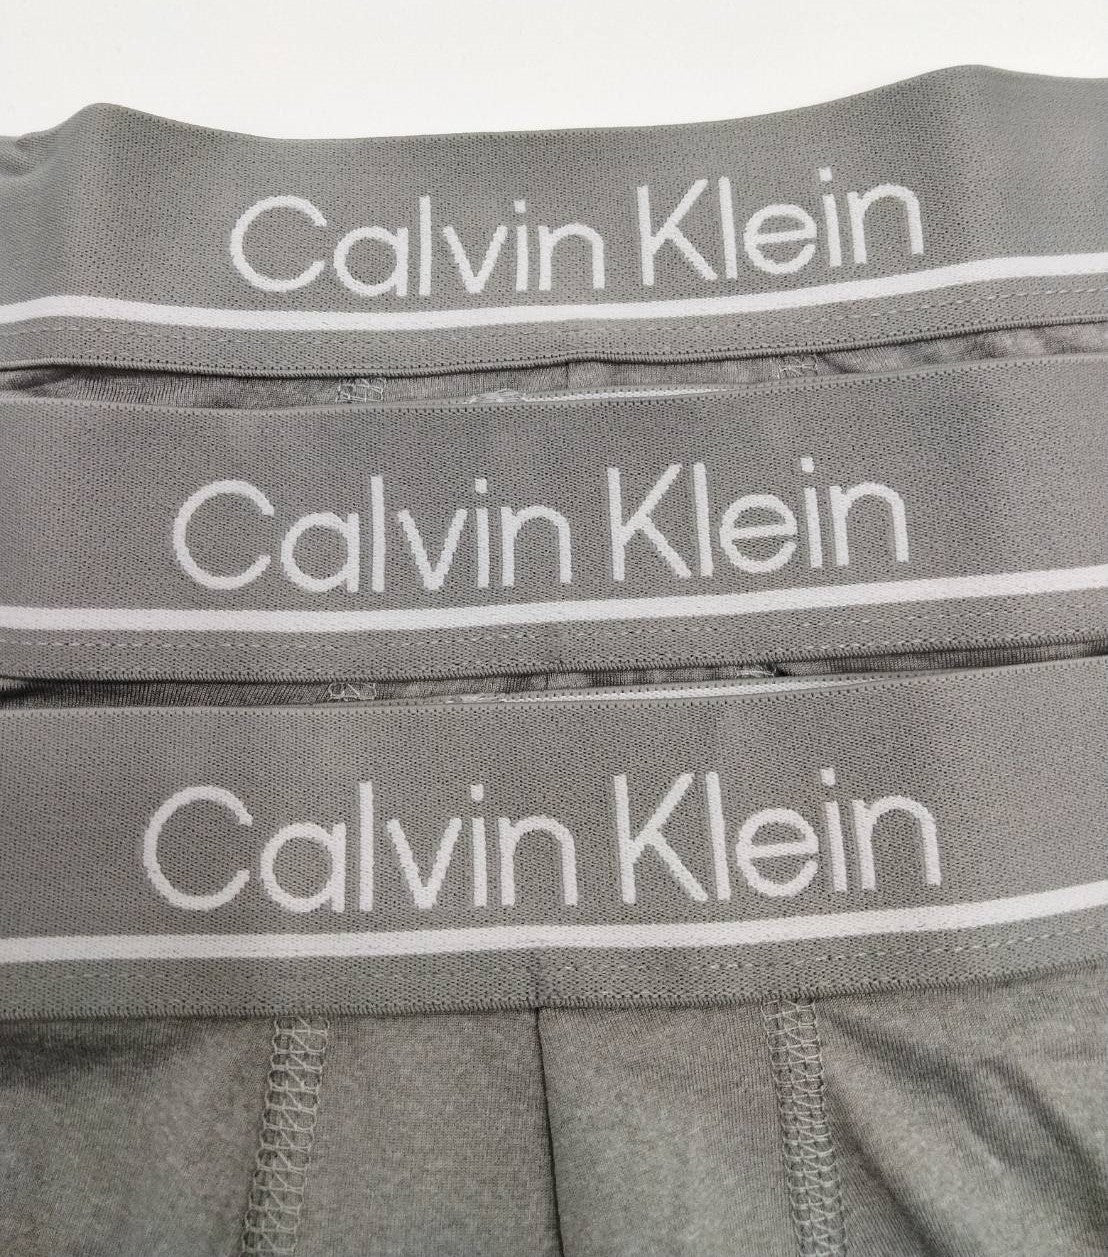 Calvin Klein(カルバンクライン) ローライズ ボクサーパンツ Grey 3枚 NP2446O